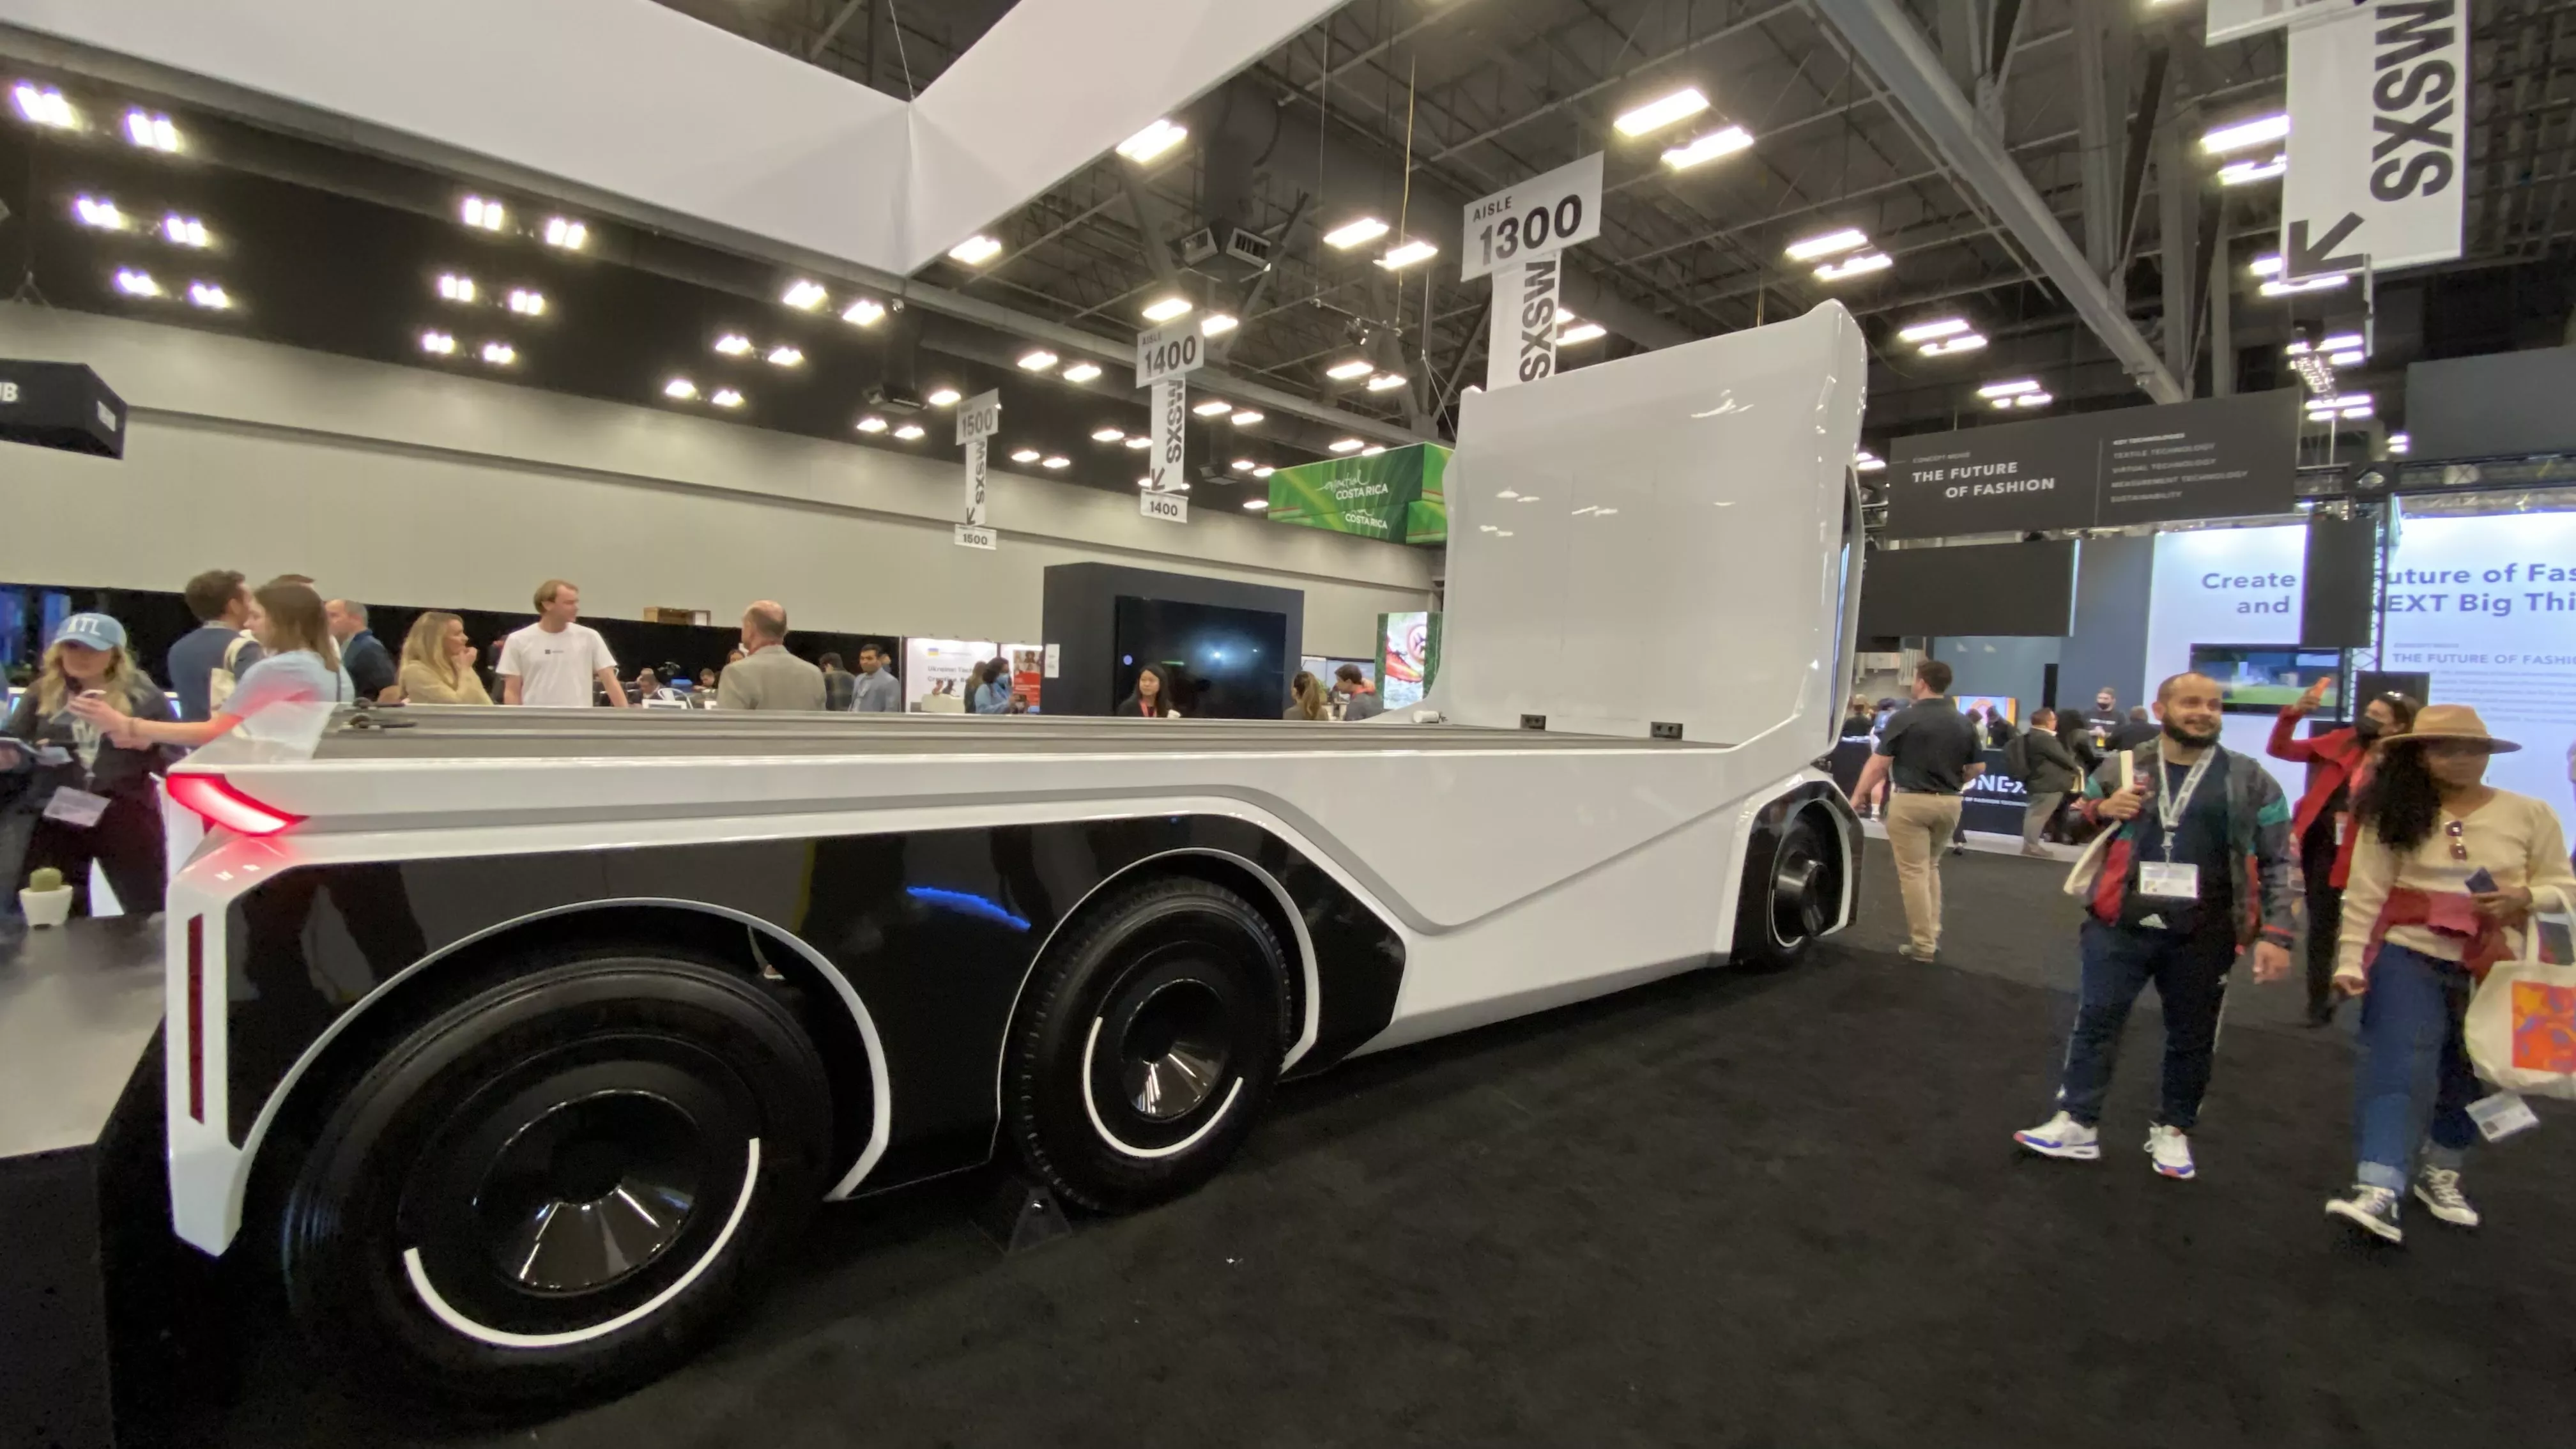 An autonomous flatbed truck